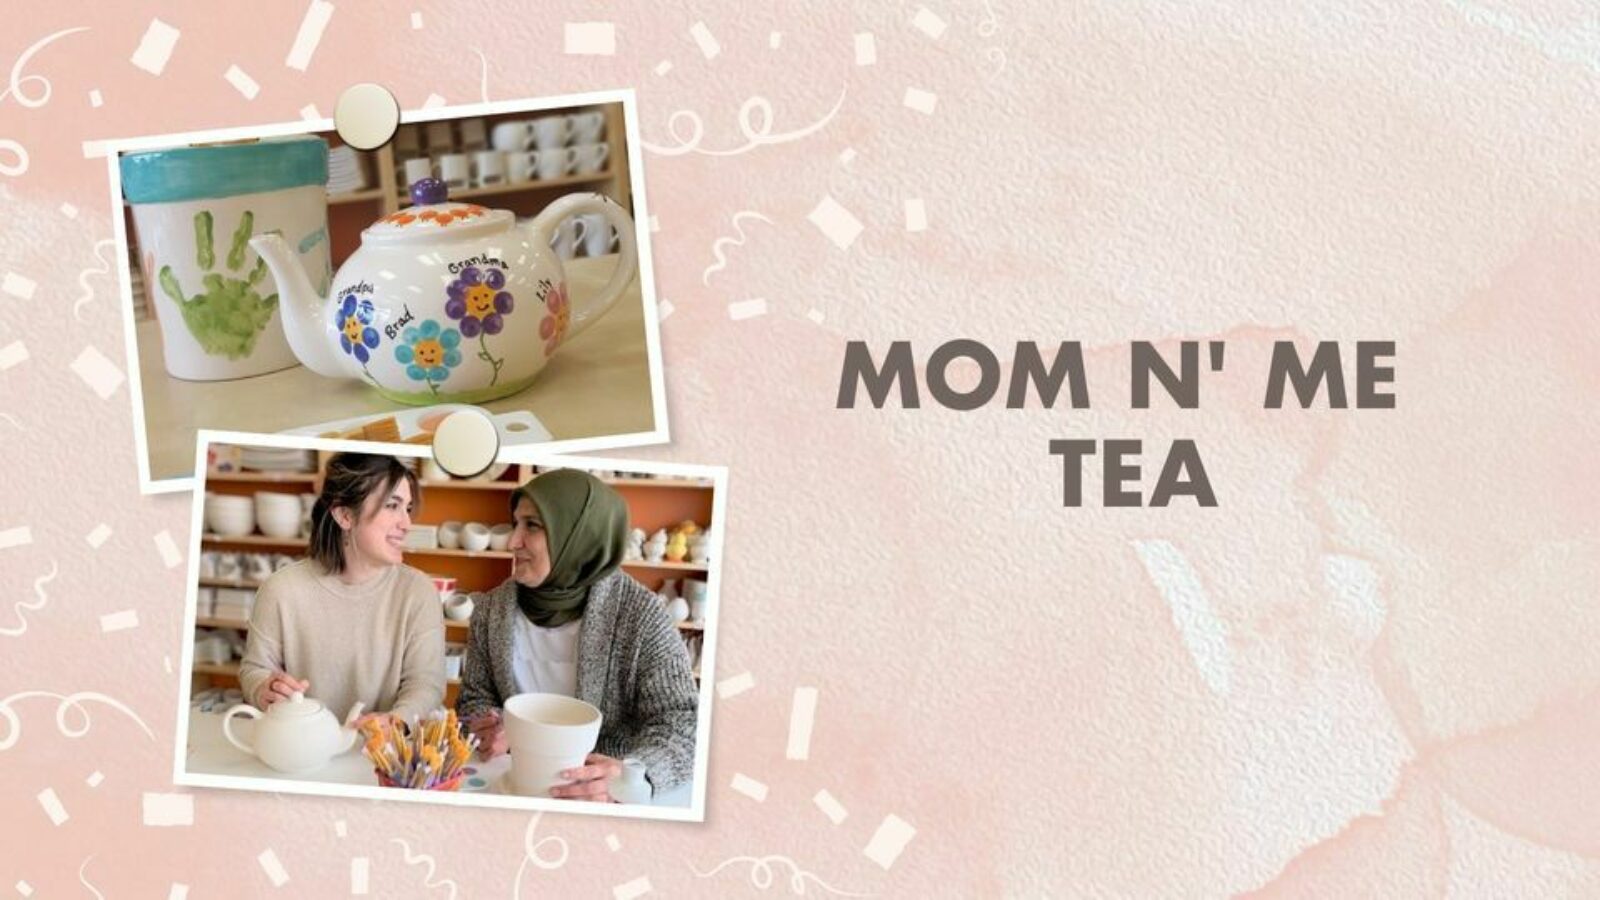 Mom and me tea